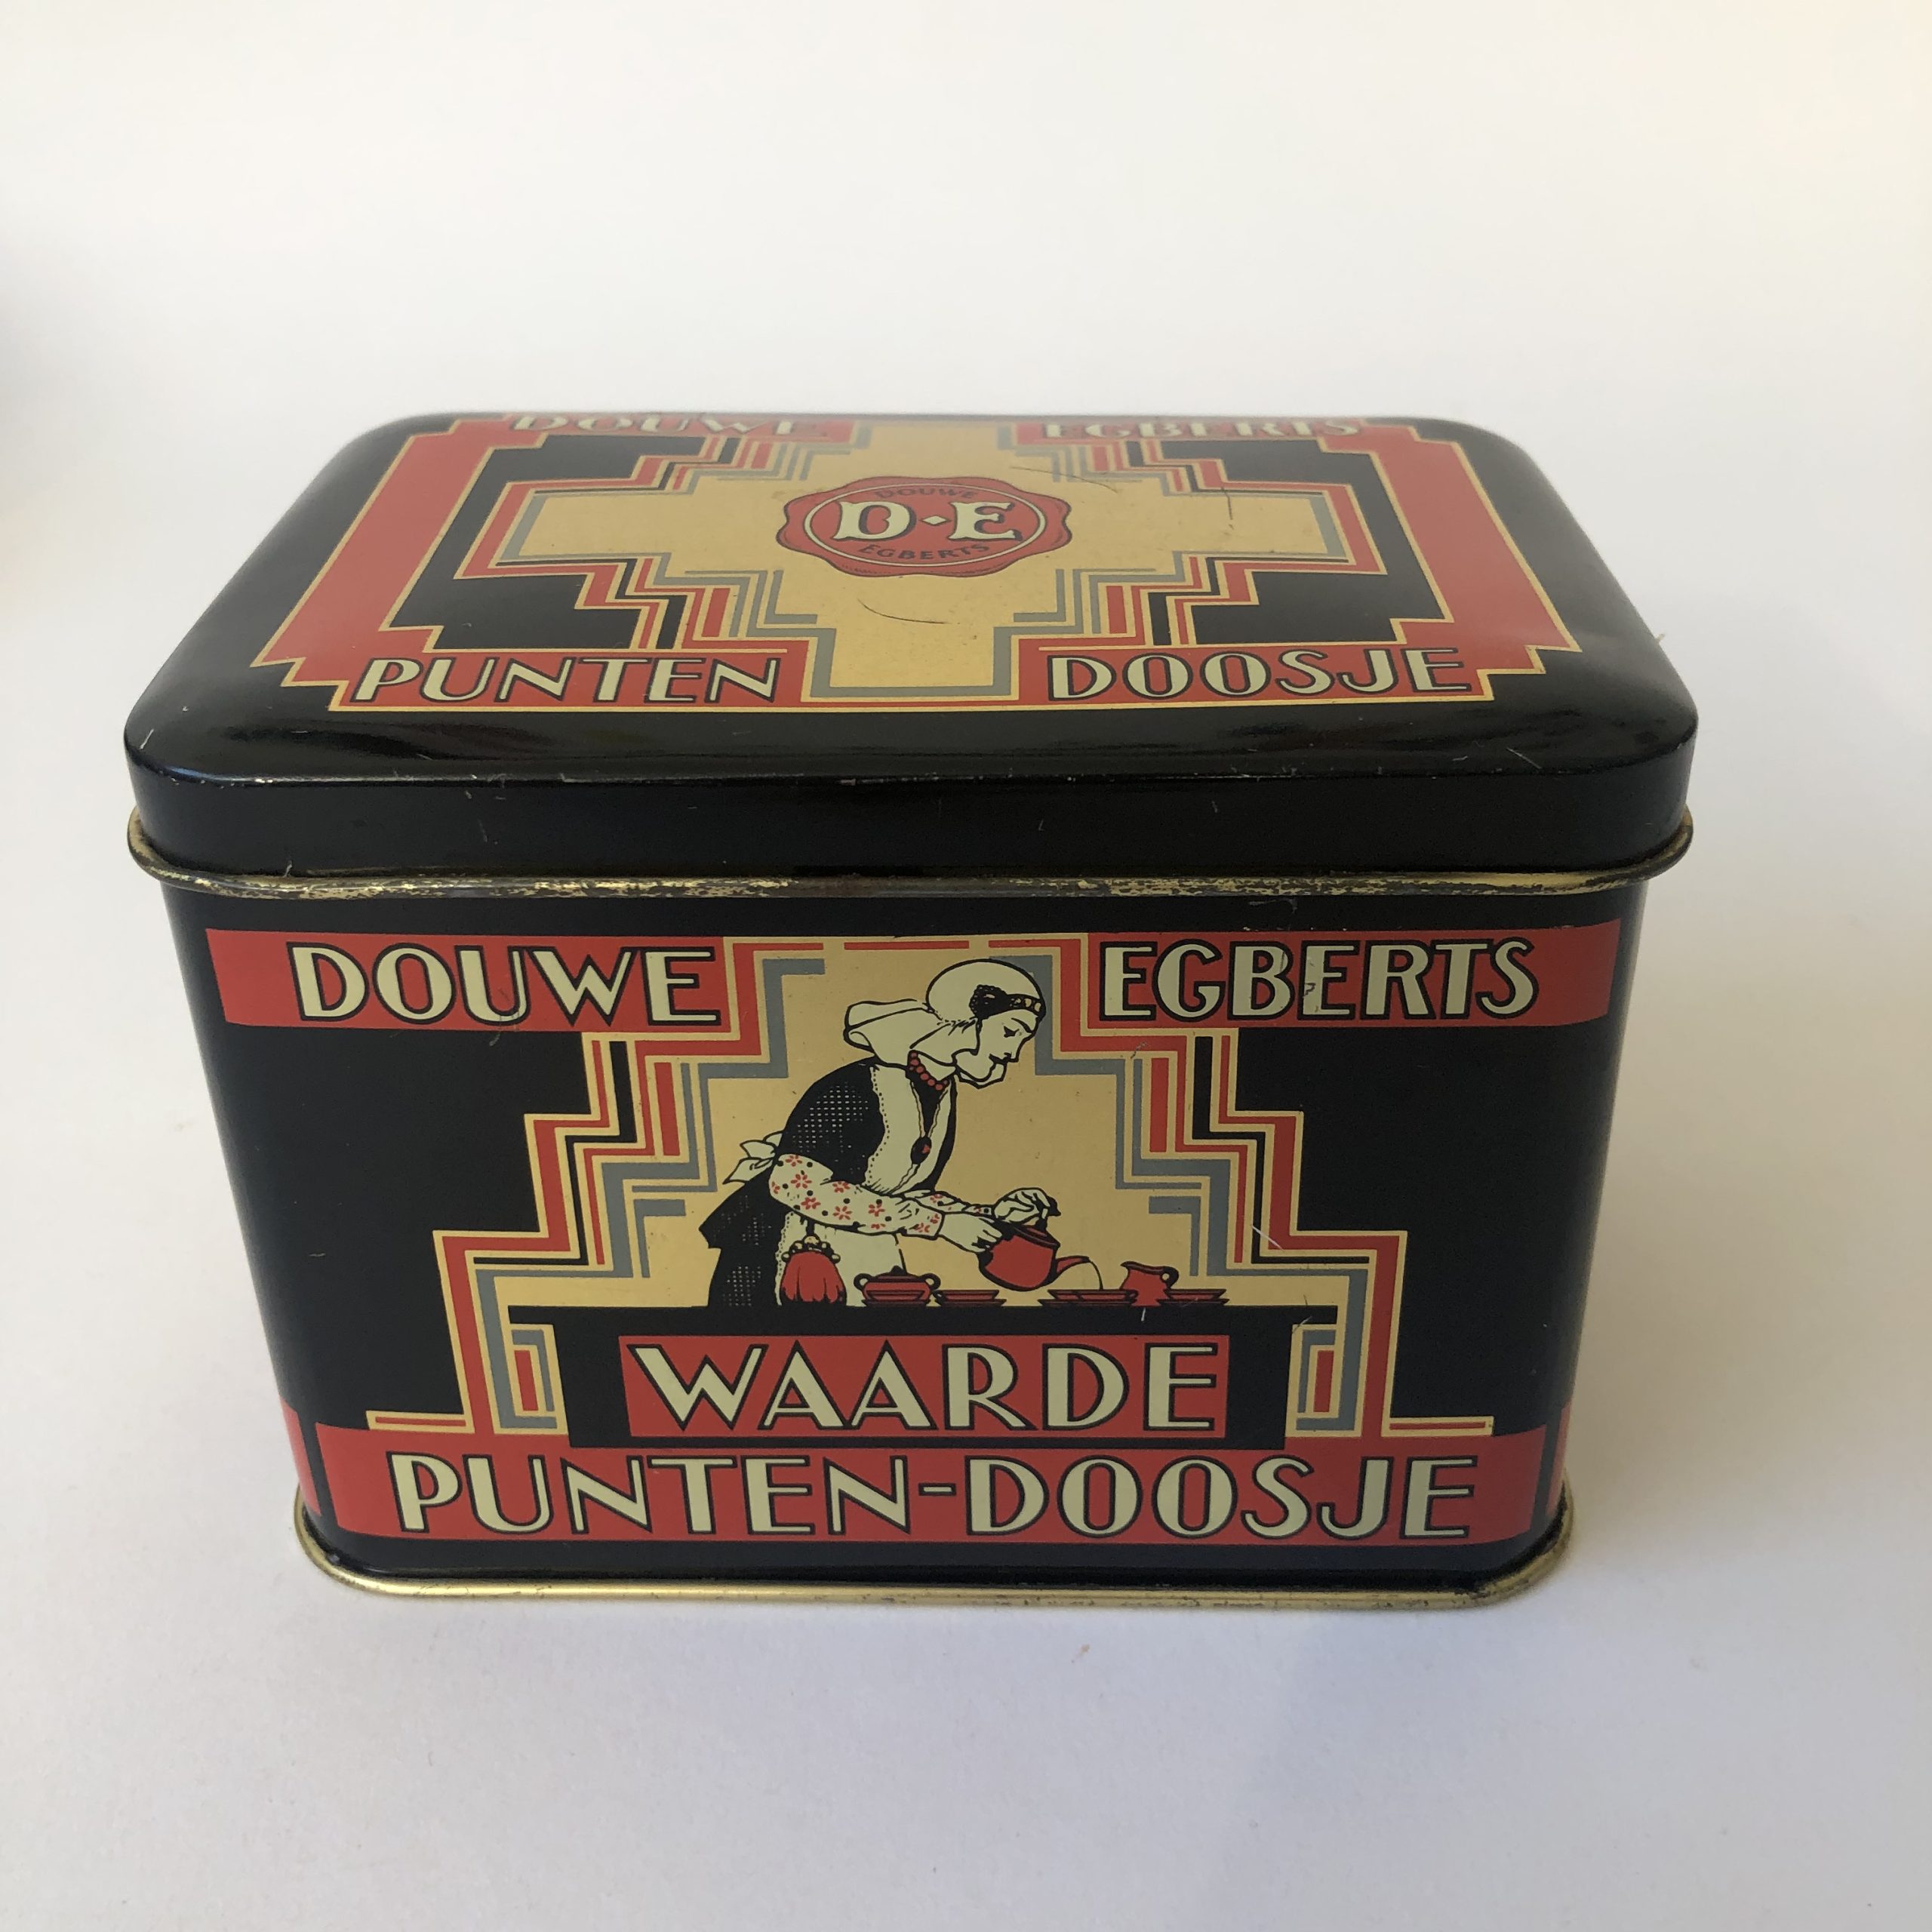 Vintage blik/trommel waarde punten doosje van Douwe Egberts